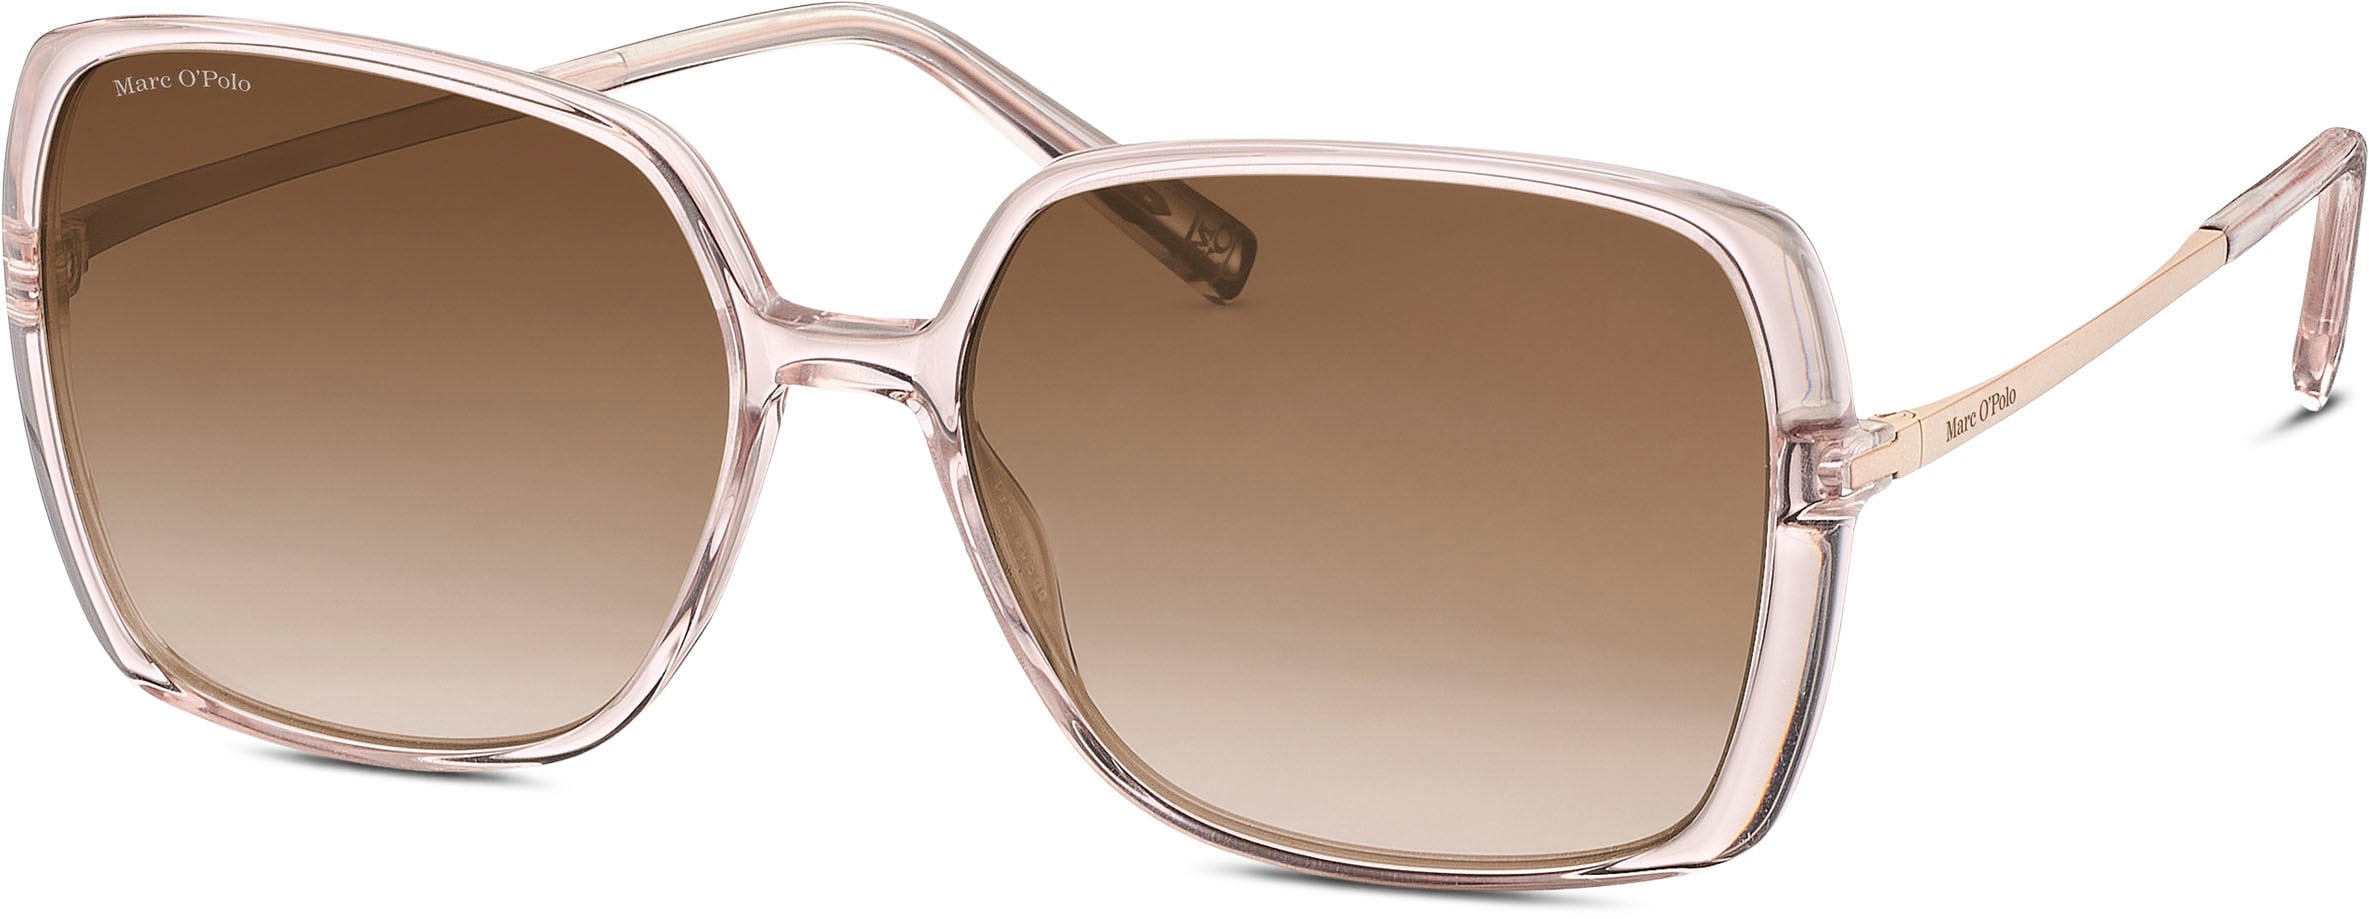 Sonnenbrille »Modell 506190«, Karree-From